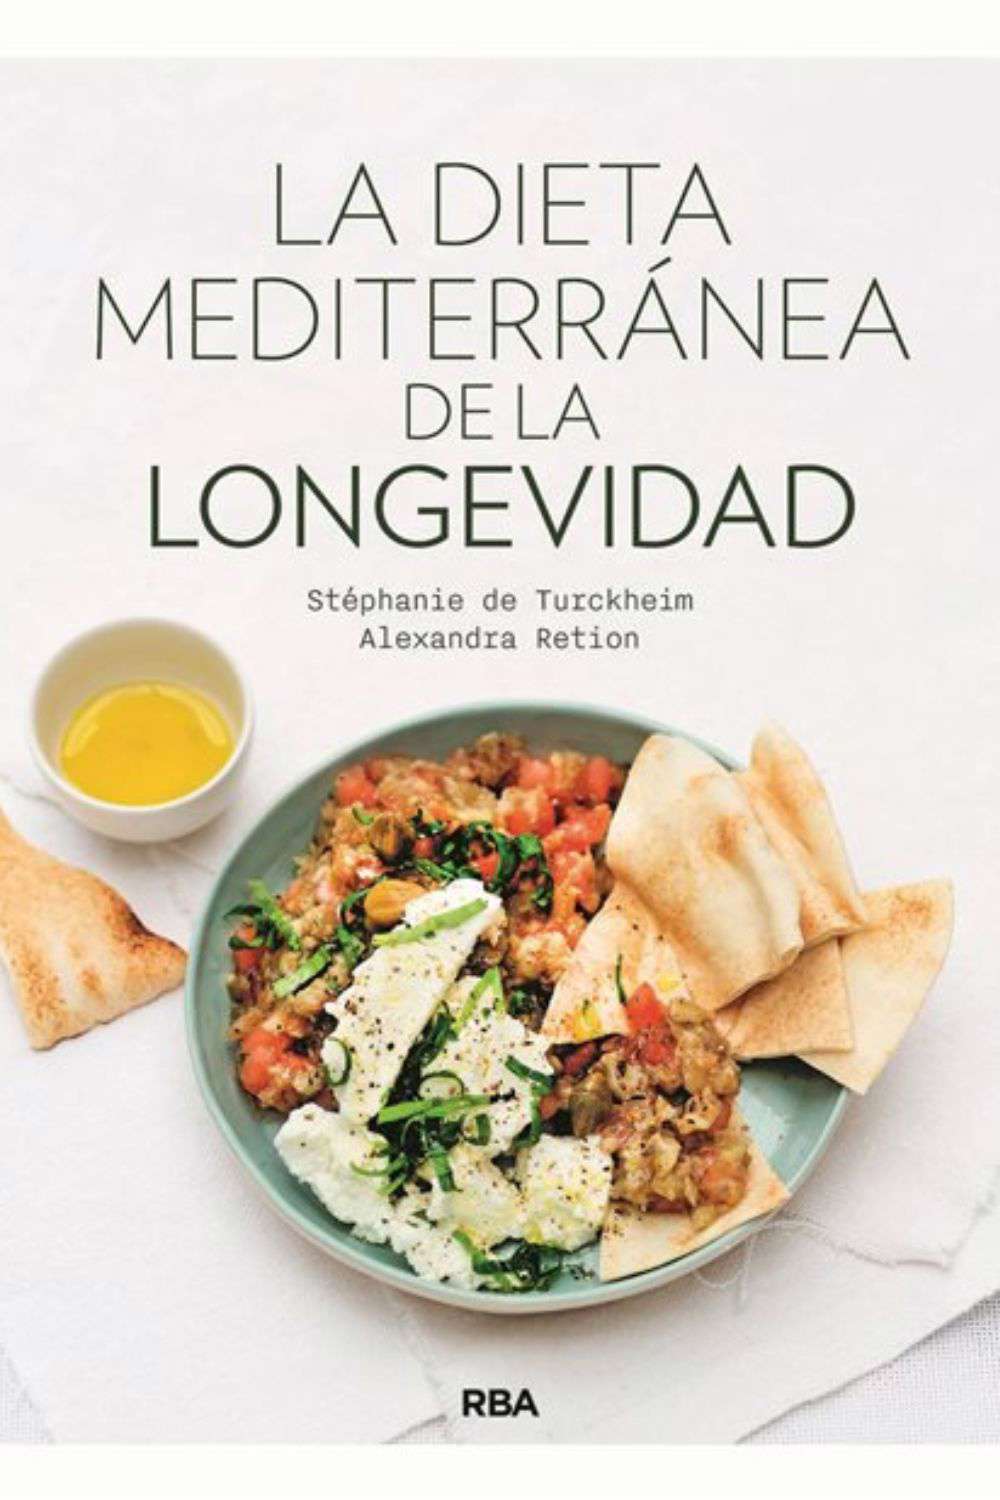 'La dieta mediterránea de la longevidad' de Alexandra Retion, Stéphanie De Turckheim